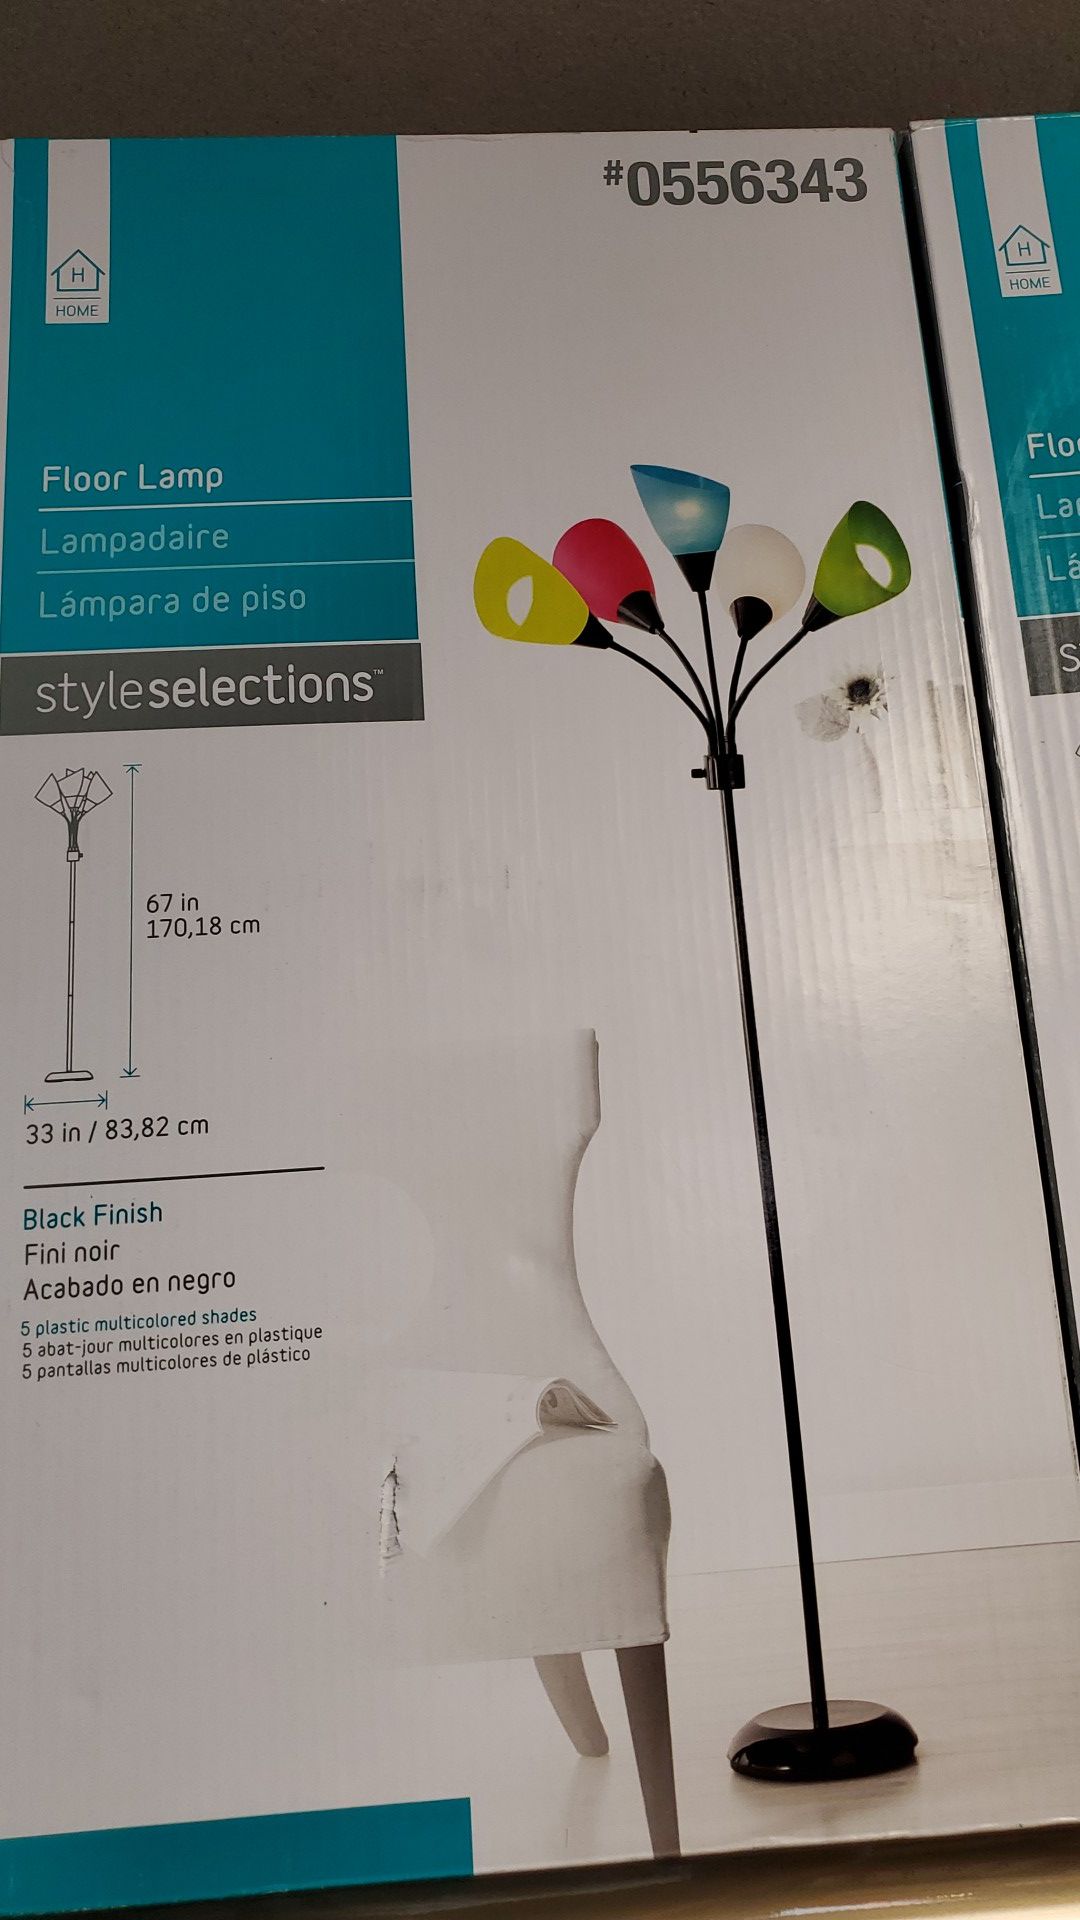 Floor lamp new 25.00ea